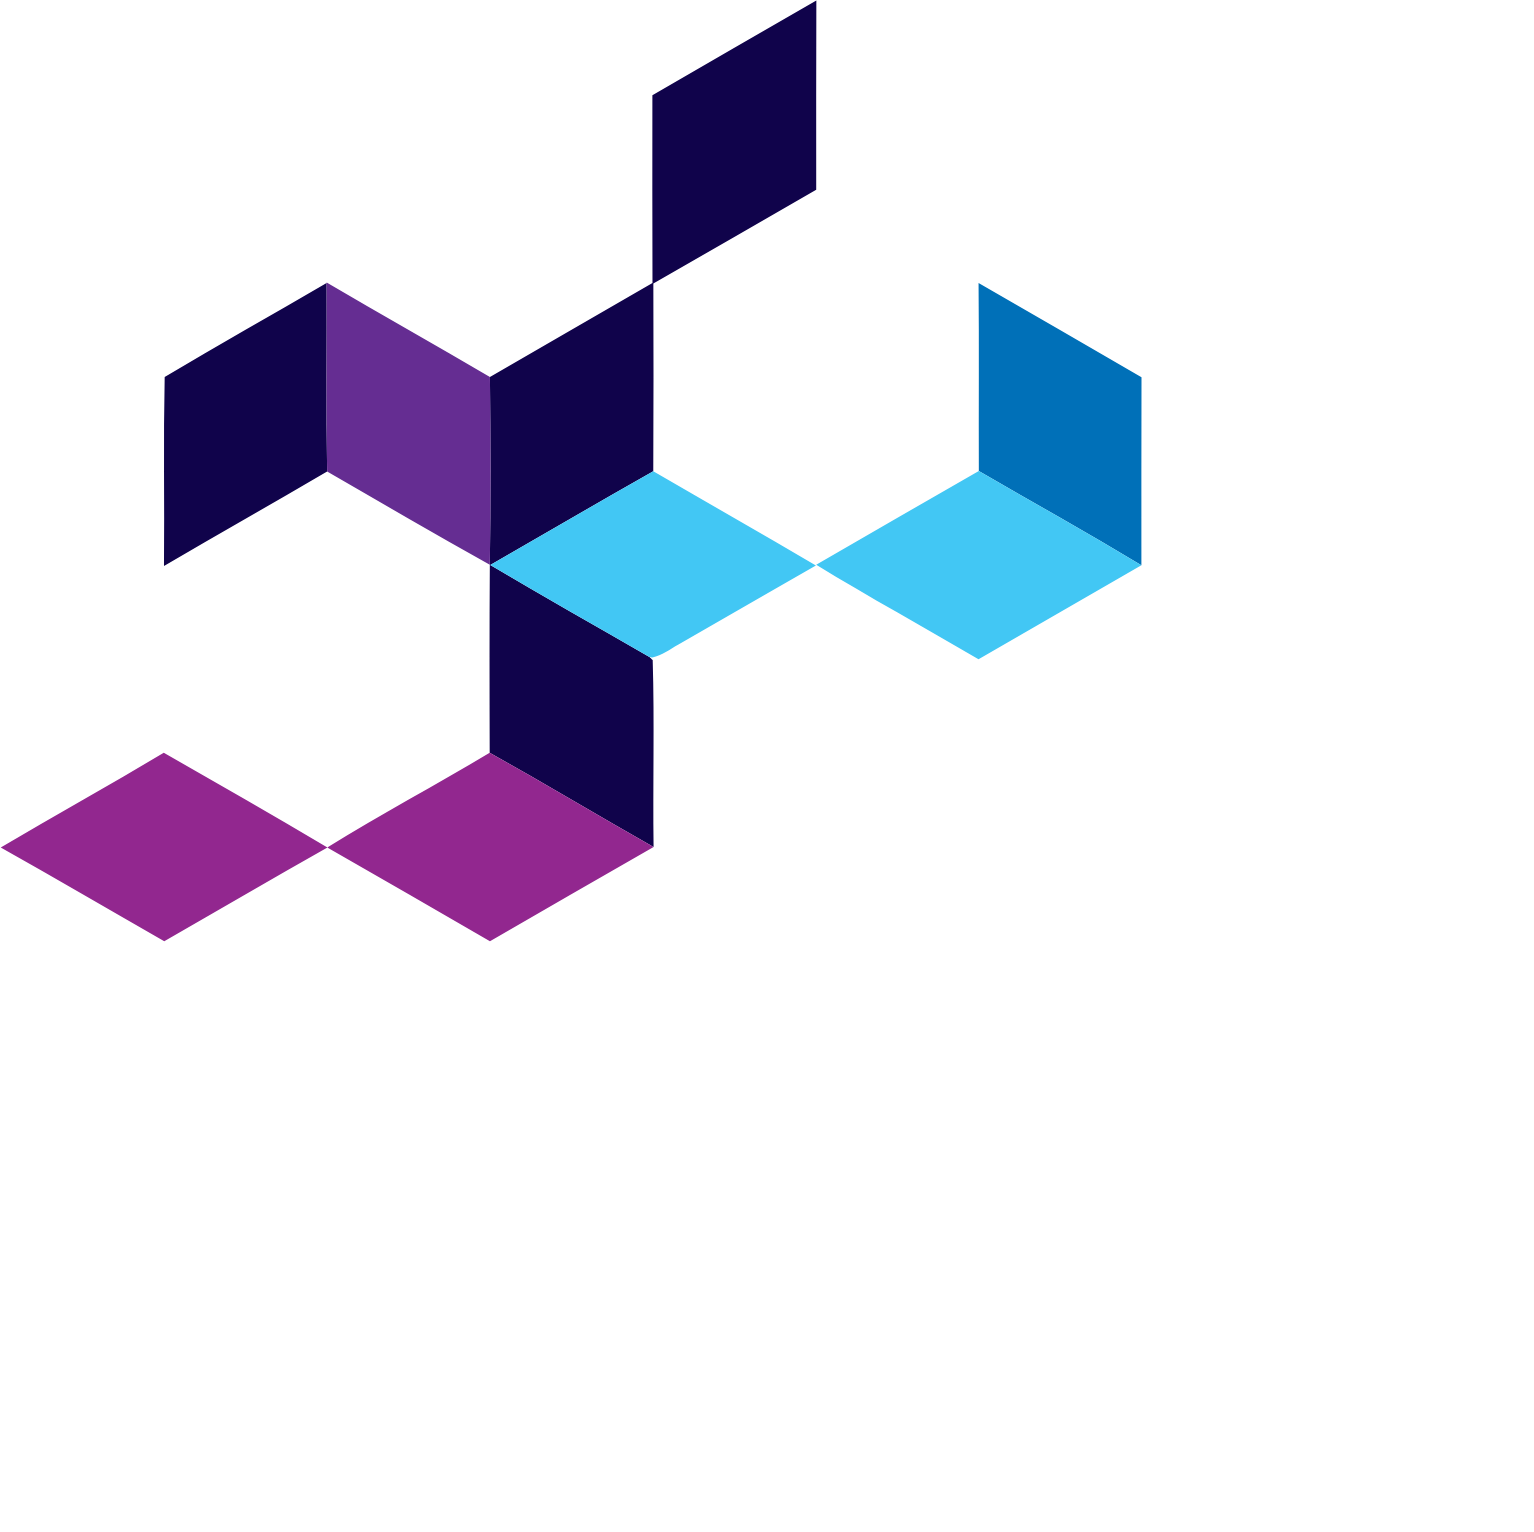 Elm Company logo grand pour les fonds sombres (PNG transparent)